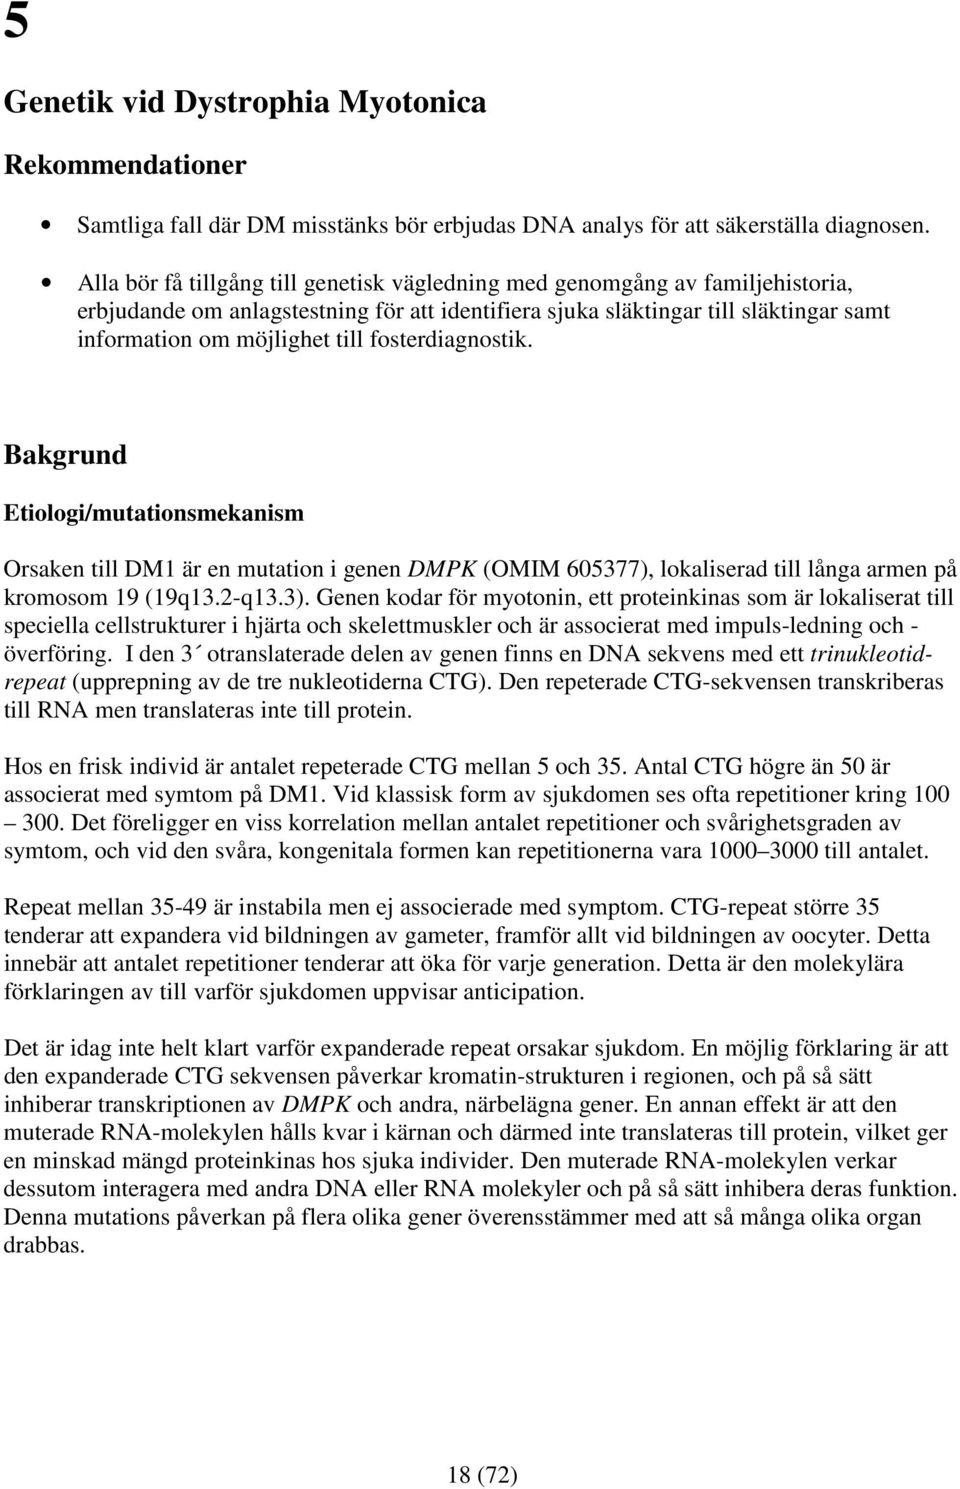 fosterdiagnostik. Bakgrund Etiologi/mutationsmekanism Orsaken till DM1 är en mutation i genen DMPK (OMIM 605377), lokaliserad till långa armen på kromosom 19 (19q13.2-q13.3).